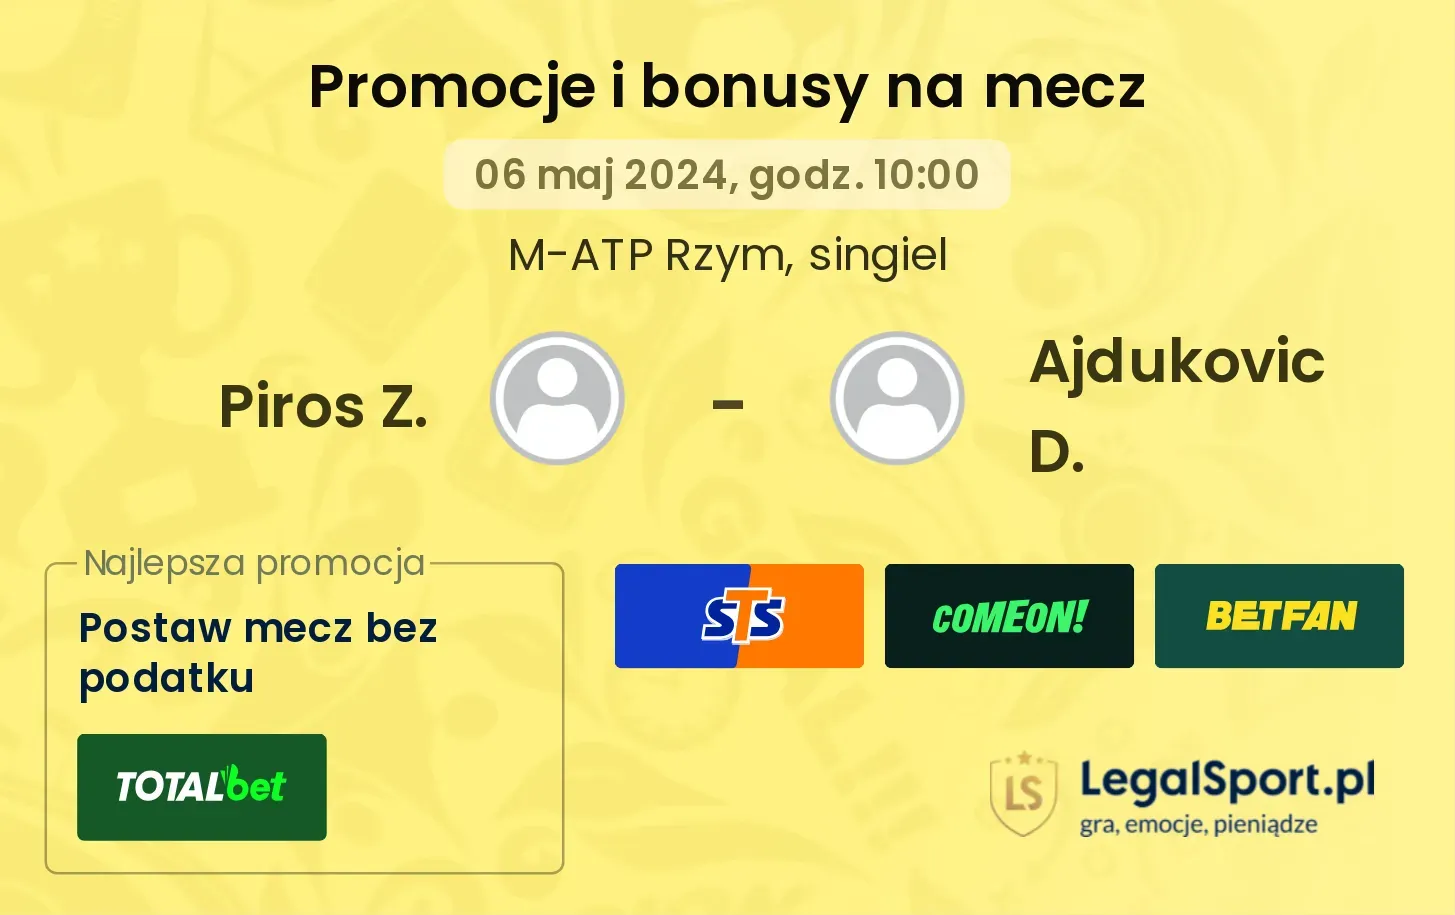 Piros Z. - Ajdukovic D. promocje bonusy na mecz